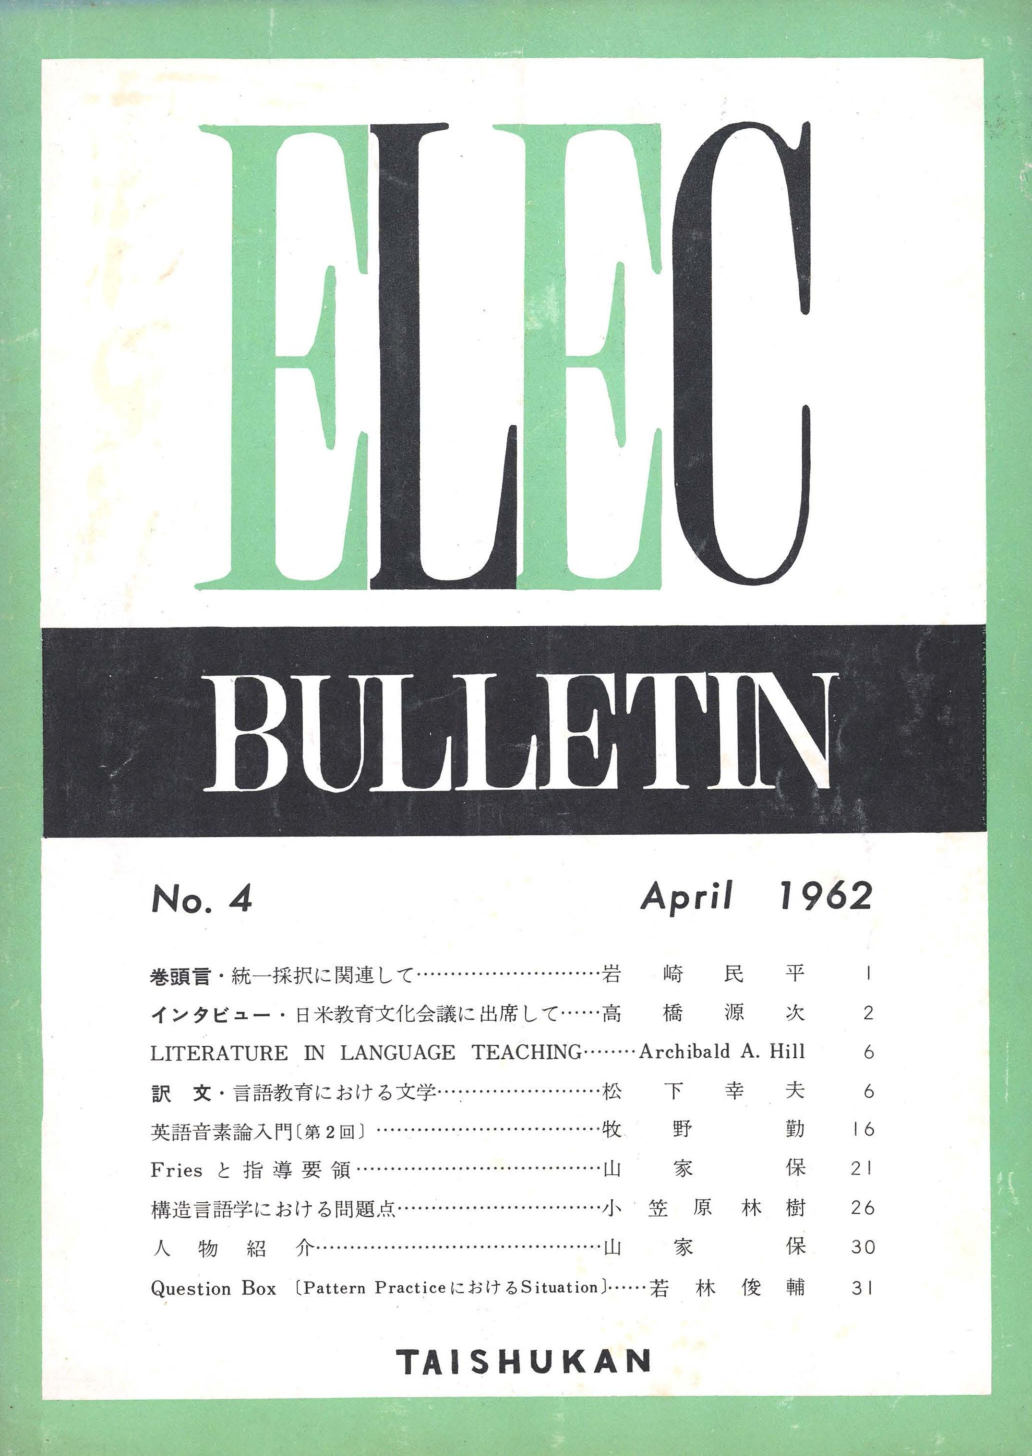 ELEC BULLETIN No. 4　April 1962